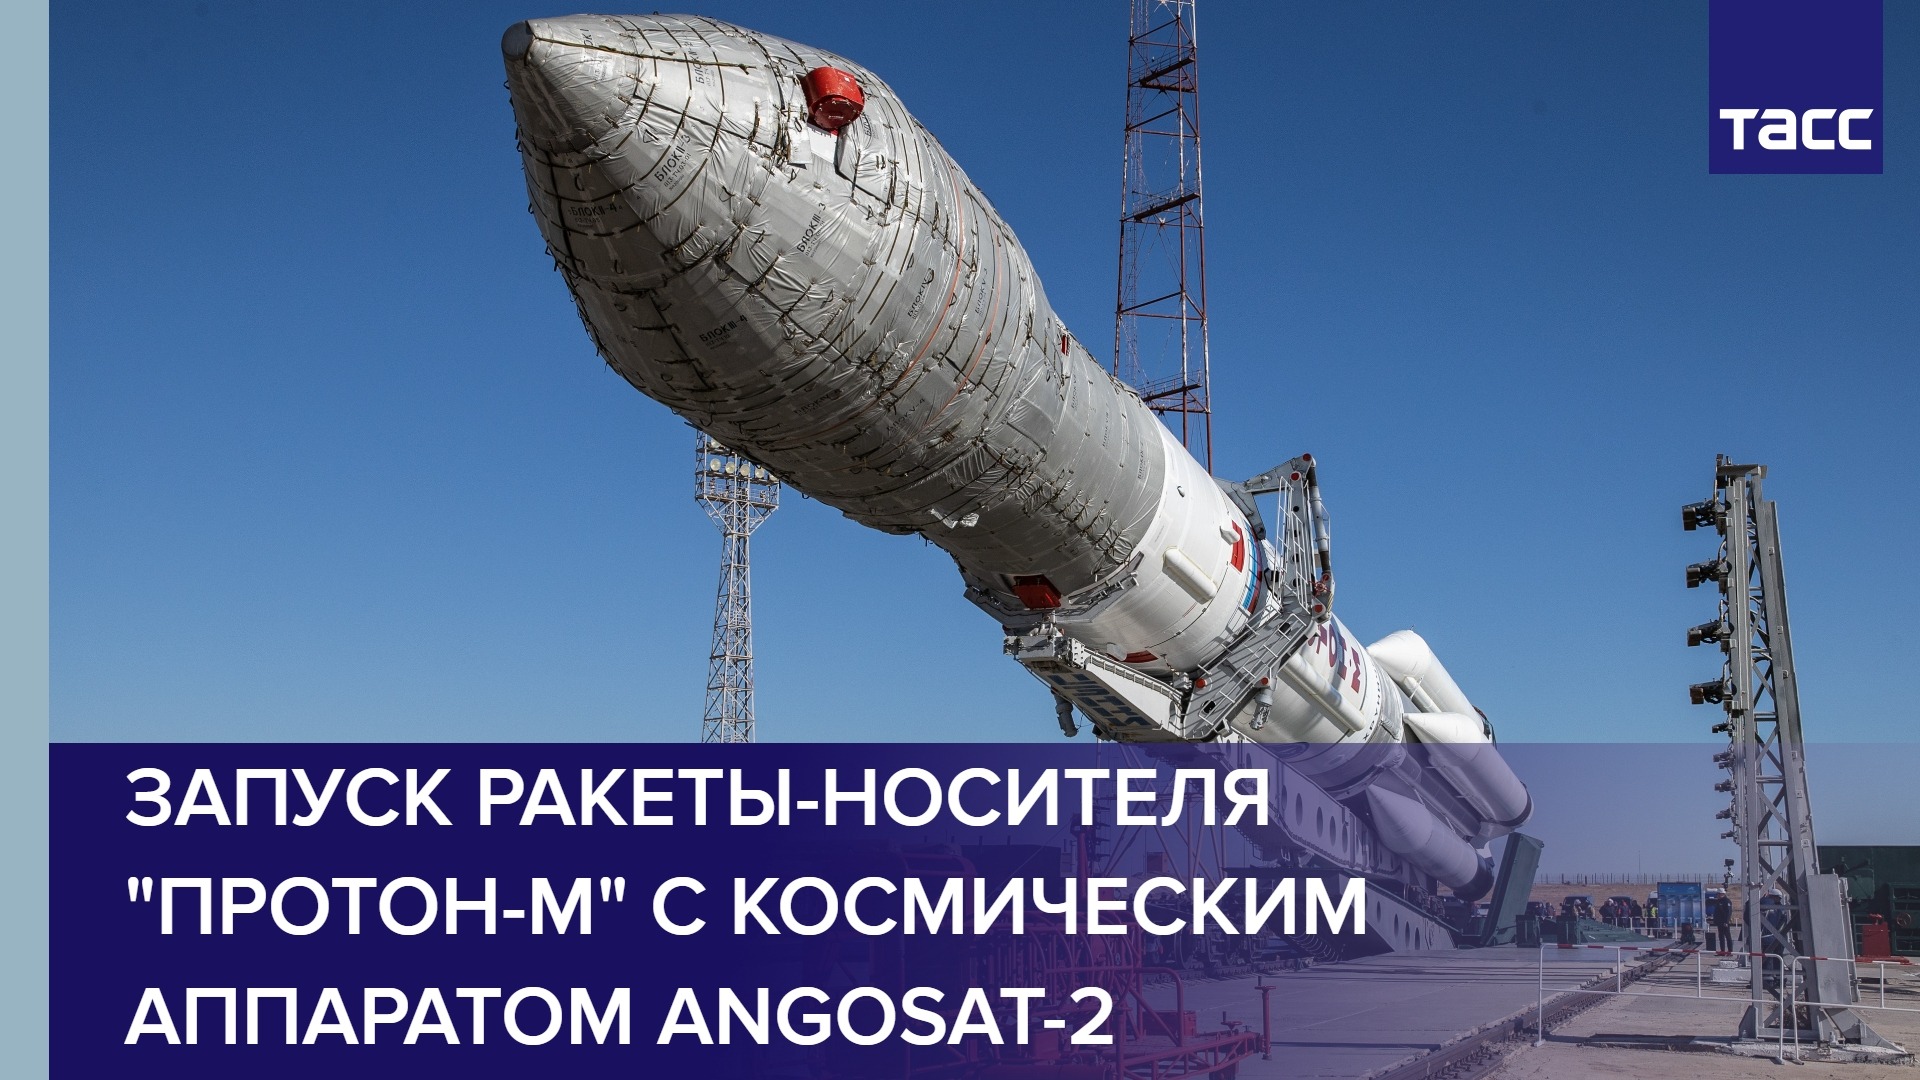 Запуск ракеты-носителя "Протон-М" с космическим аппаратом Angosat-2